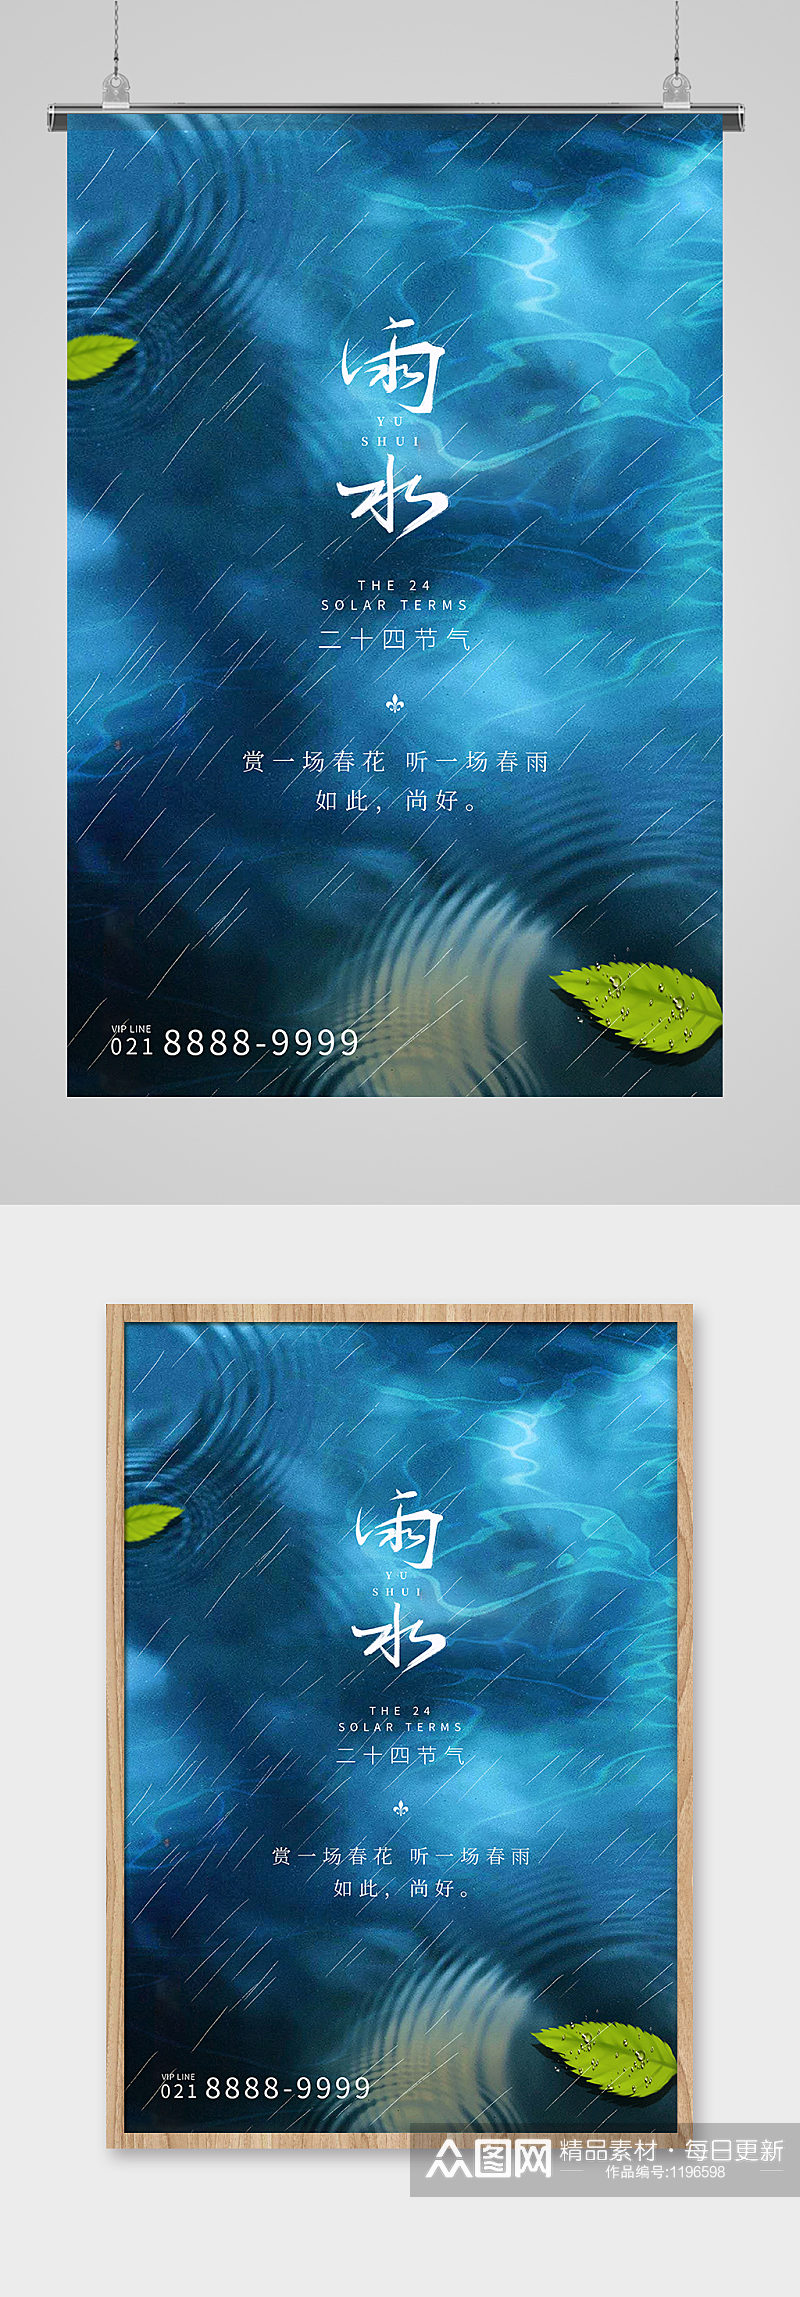 雨水节气树叶蓝色创意海报素材